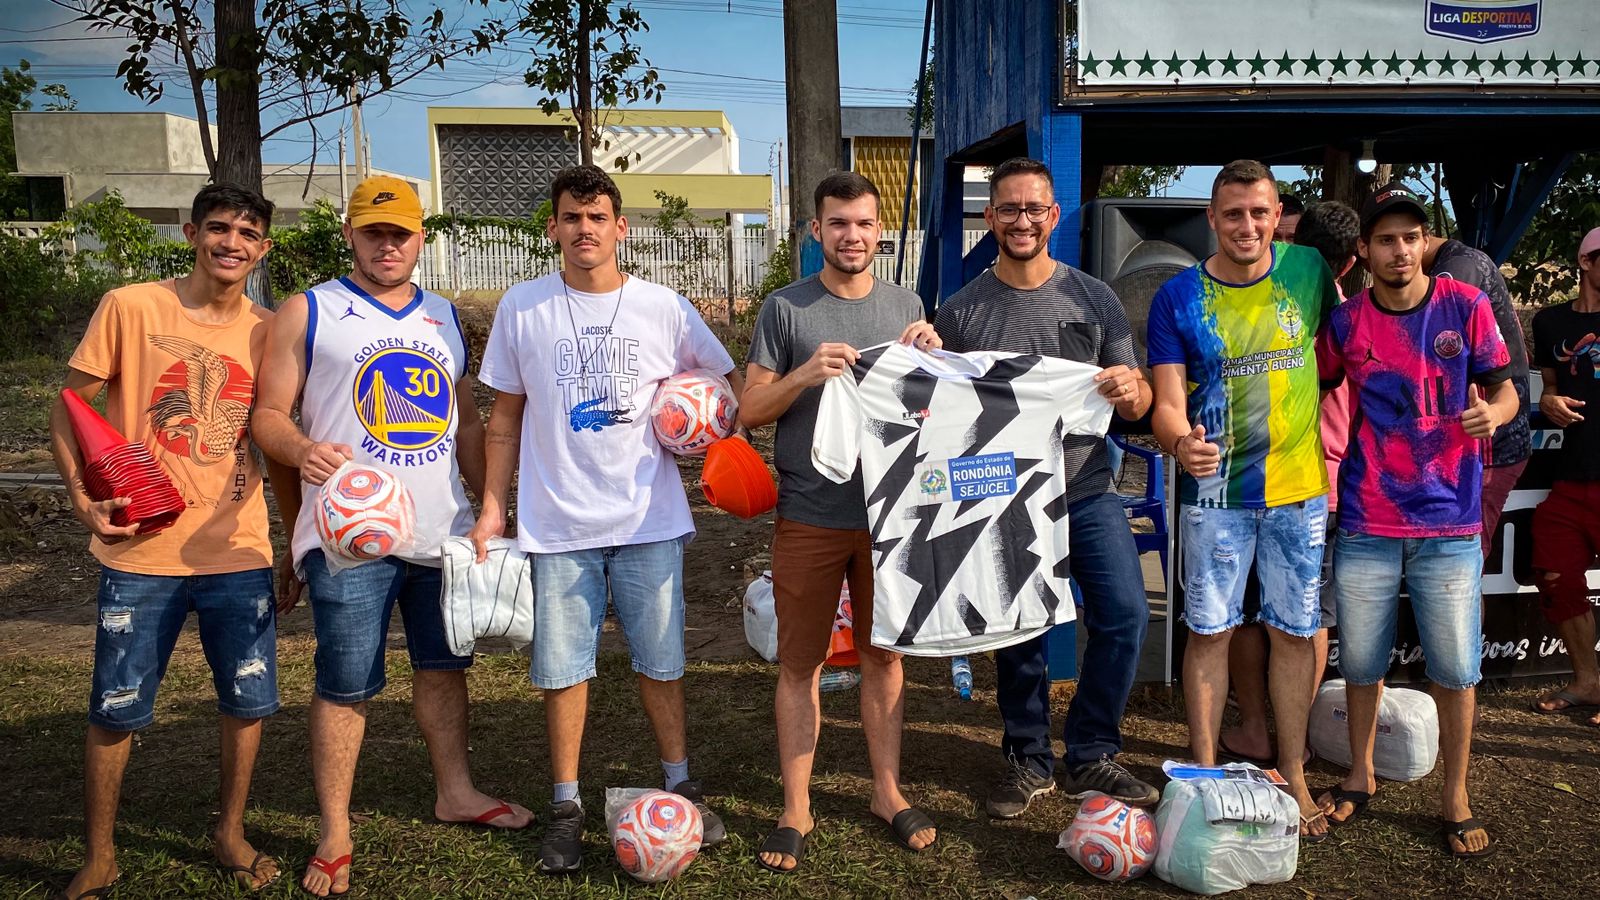 Deputado Anderson entrega uniformes e kits esportivos a quase 600 atletas da Liga Desportiva de Pimenta Bueno - News Rondônia